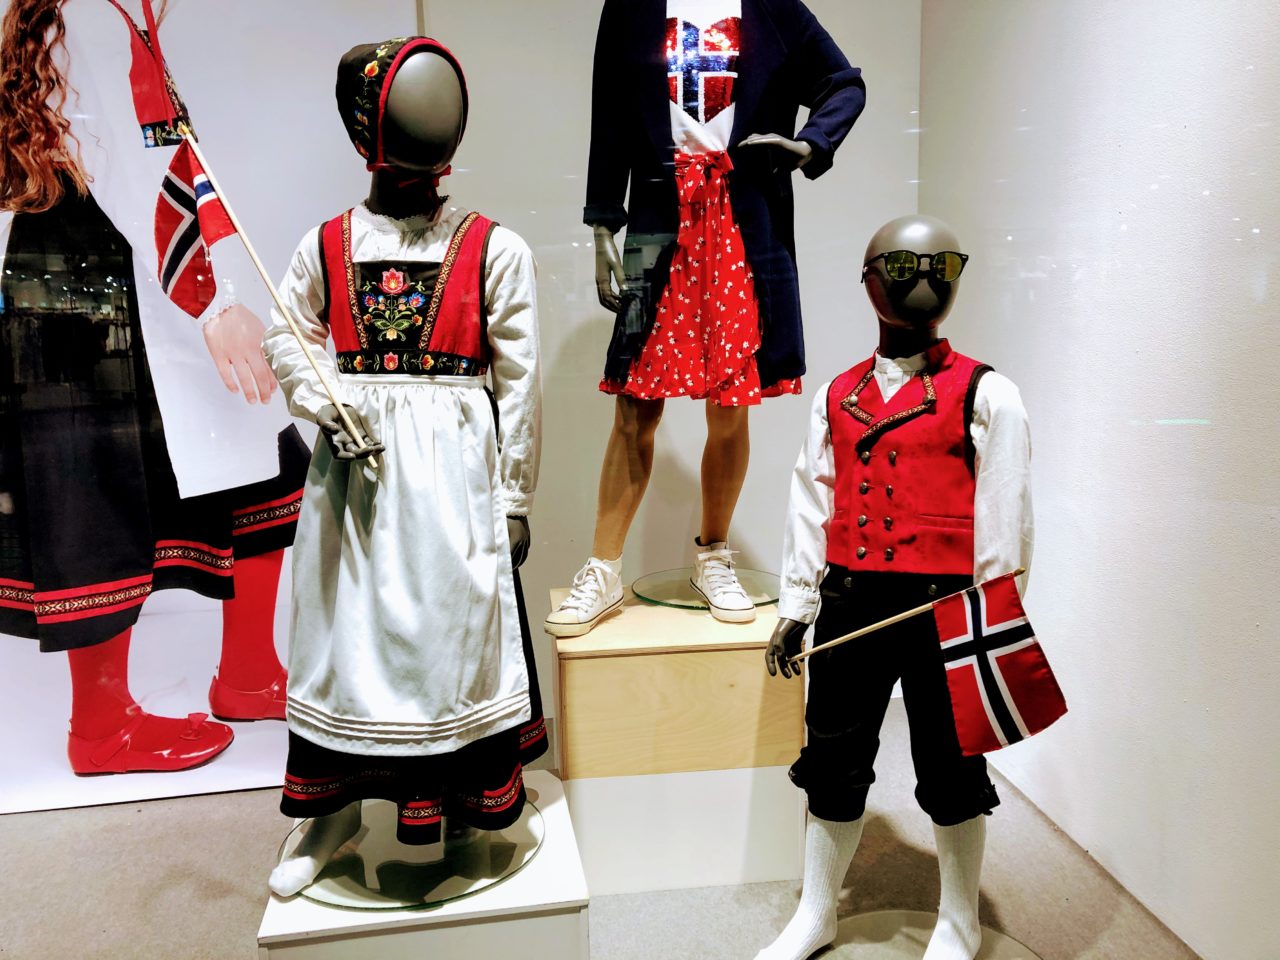 ノルウェーの民族衣装 ブーナッド 娘のブーナッド探し編 もかのノルウェー生活ブログ